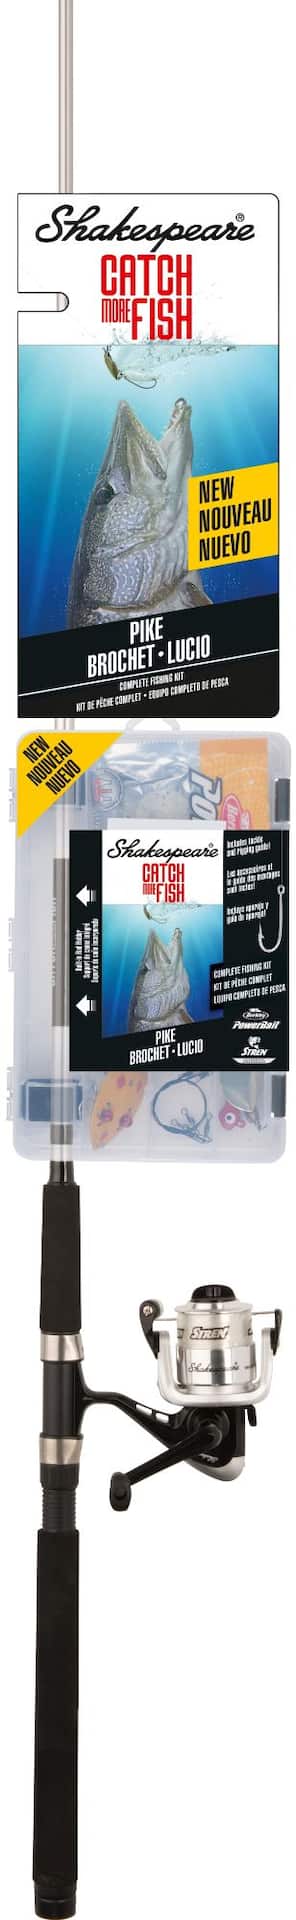 Shakespeare Fishing Reviews  shakespeare-fishing.co.uk @ PissedConsumer